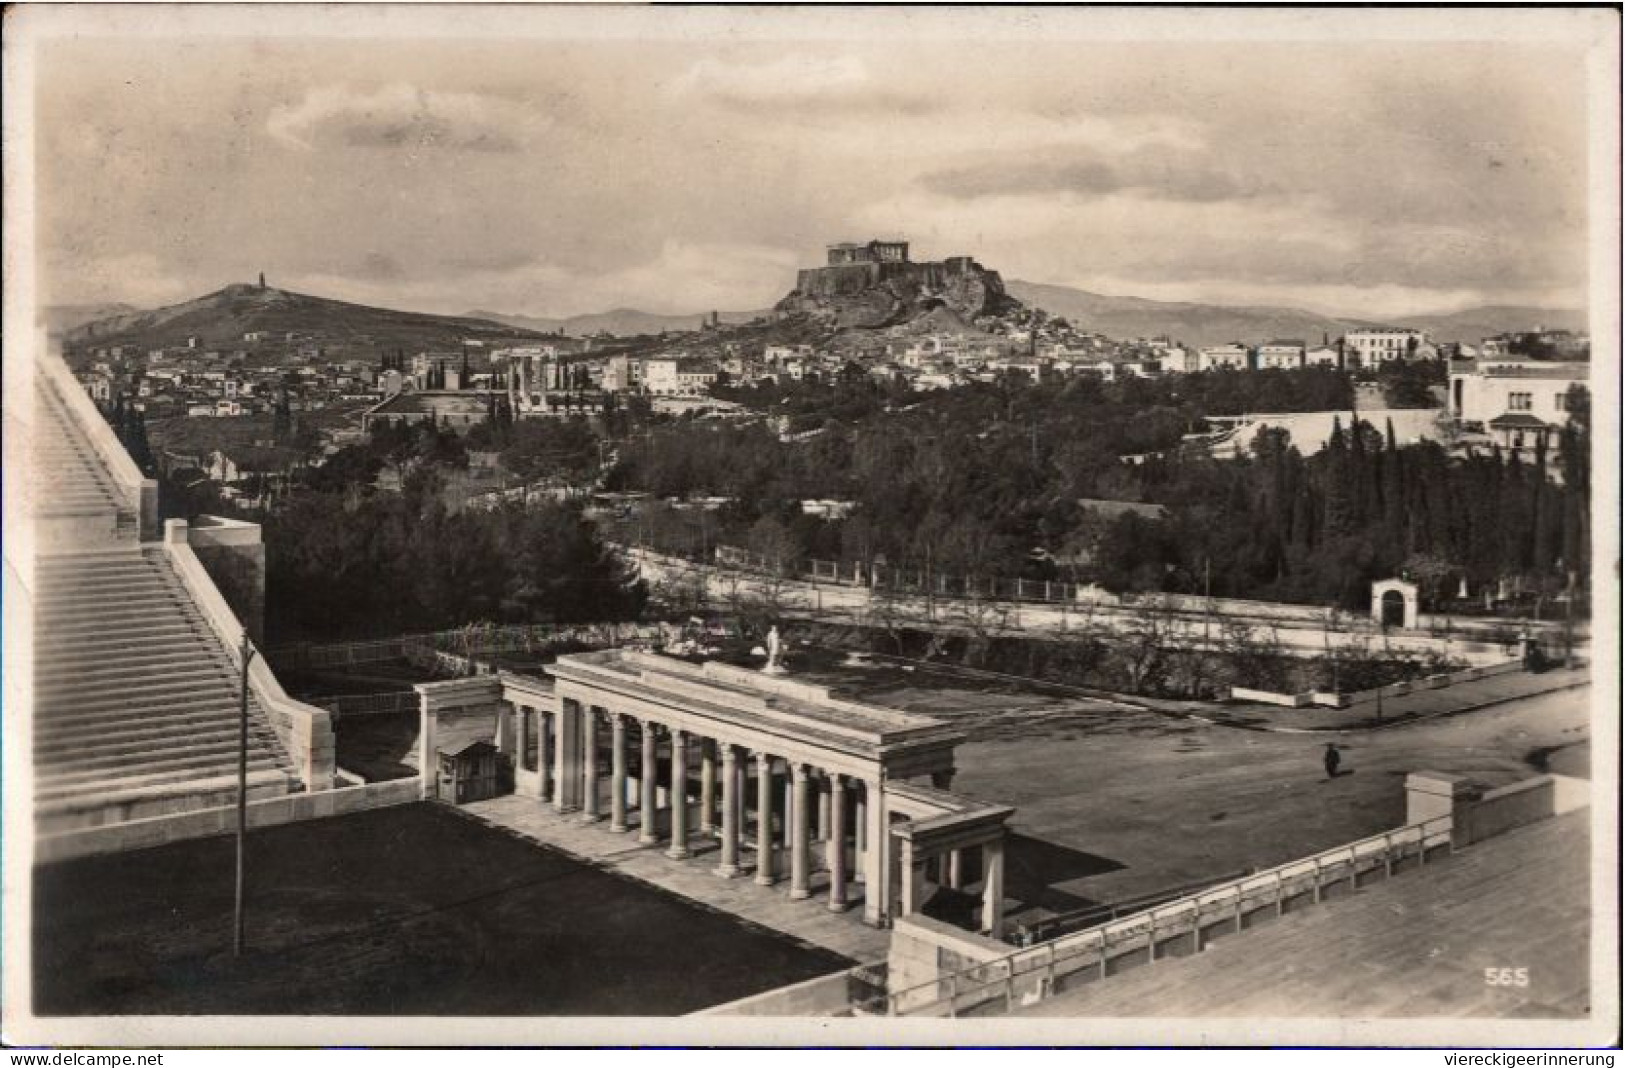 ! 1928 Ansichtskarte, Athen, Stadion, Stadium, Griechenland, Greece - Stadions